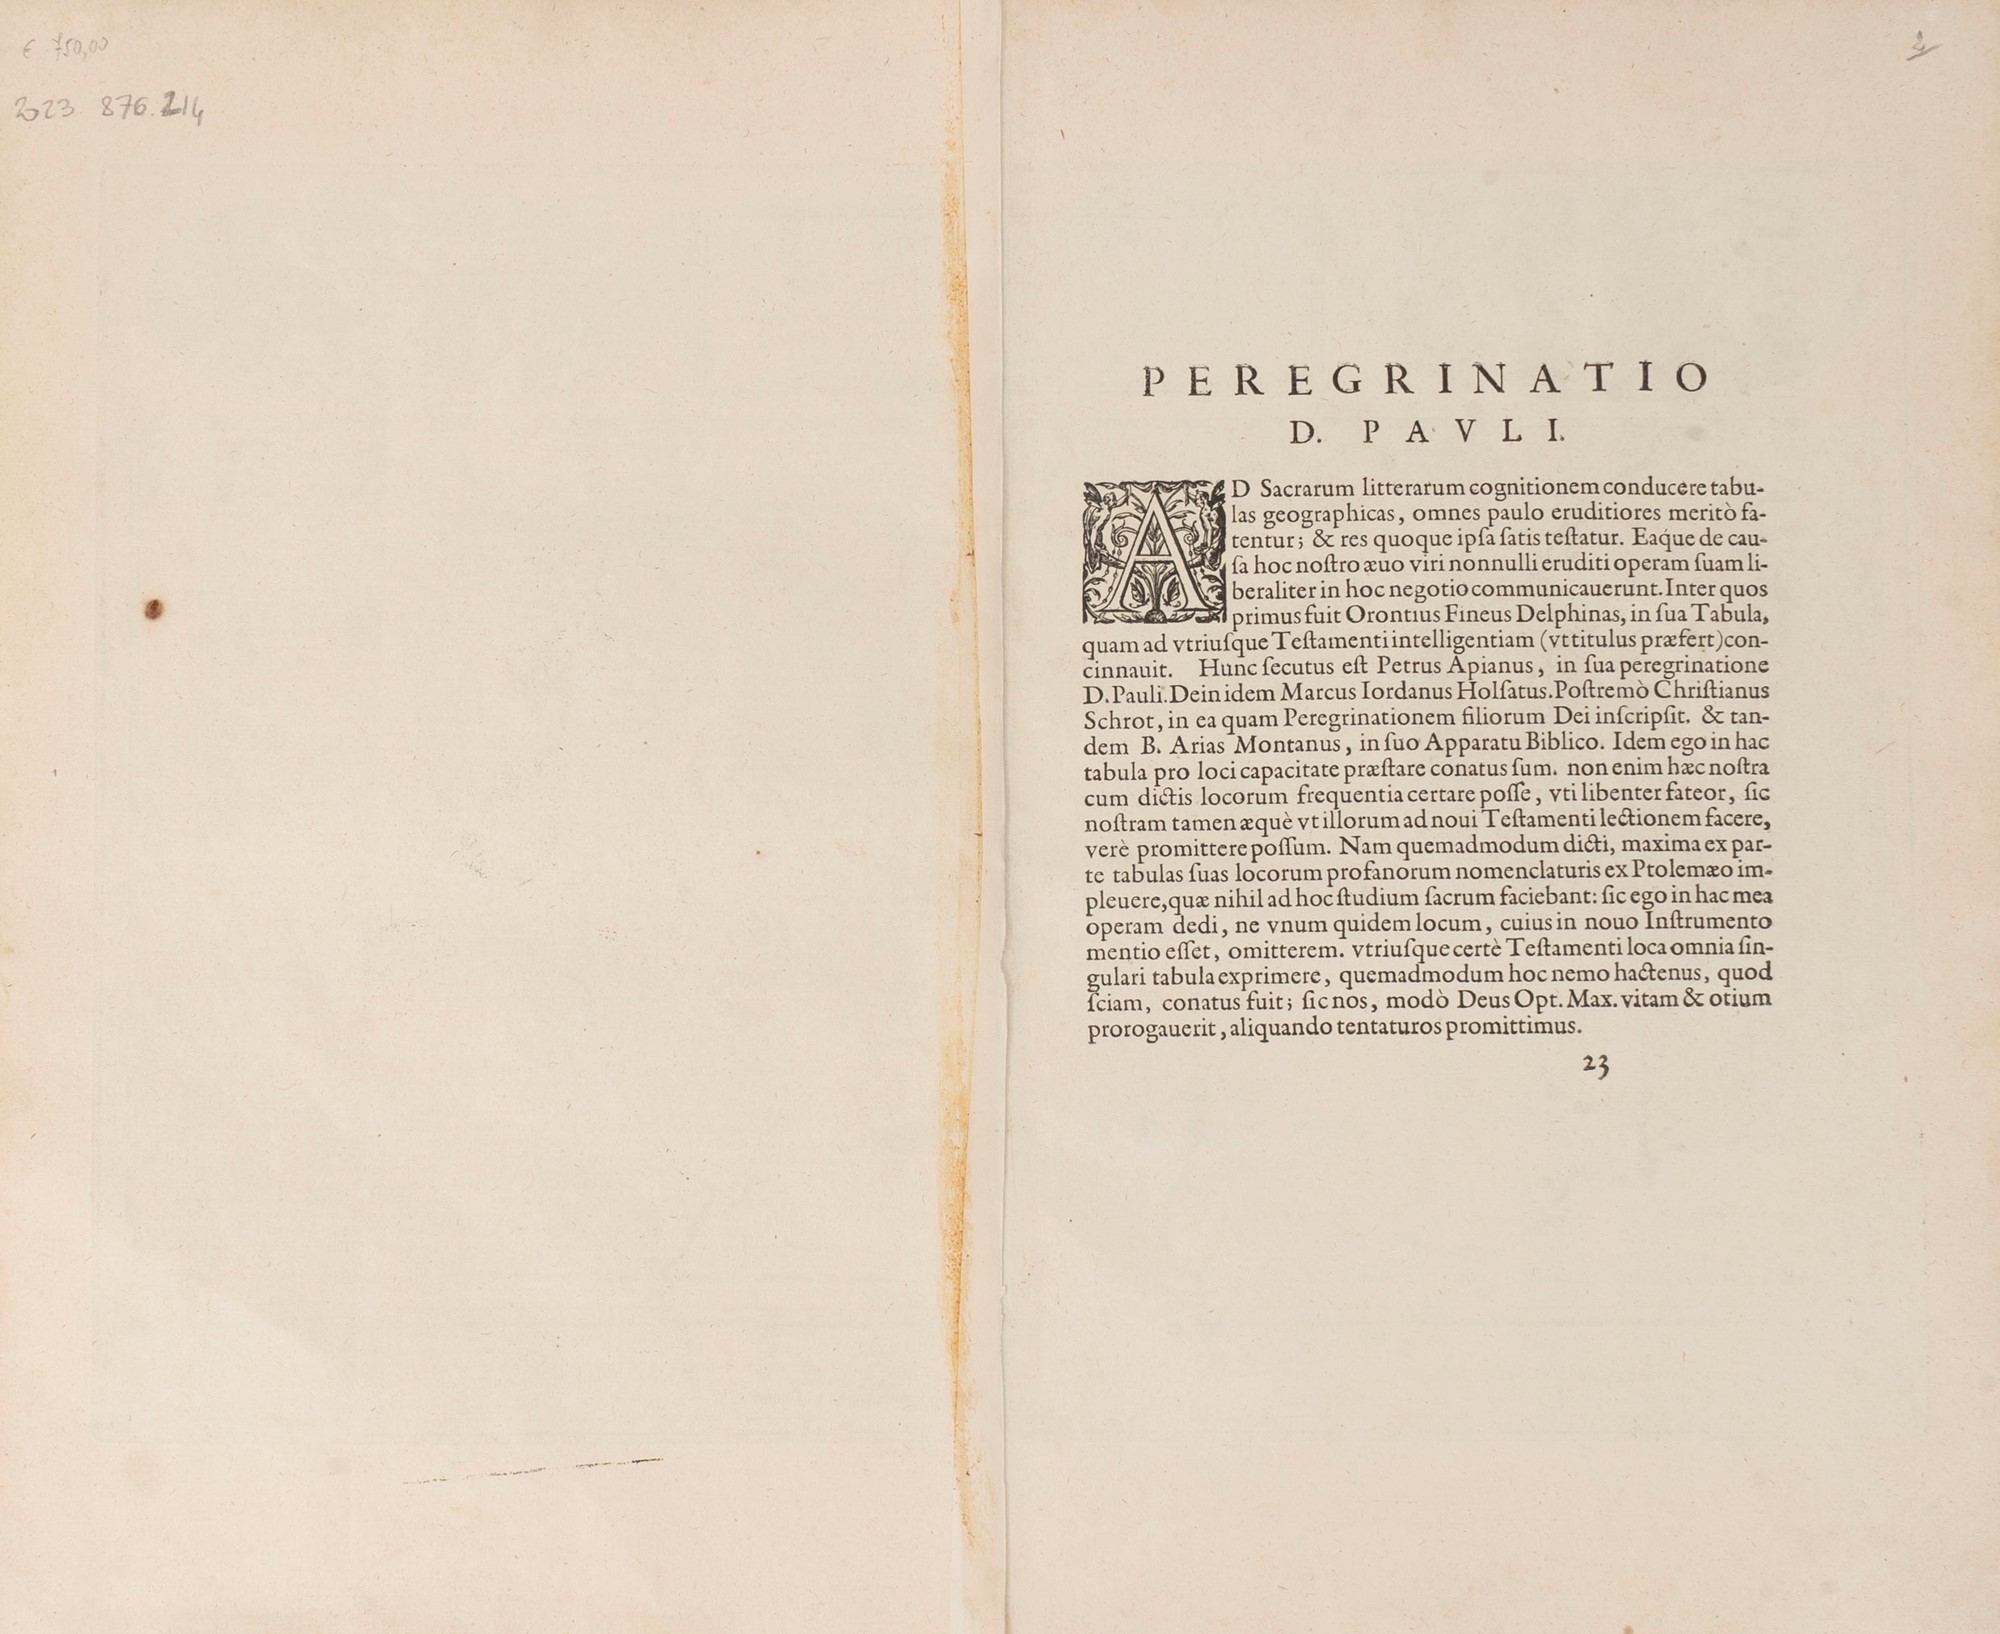 Ortelio, Abramo - Peregrinationis divi Pauli typus chorographicus. - Image 2 of 2